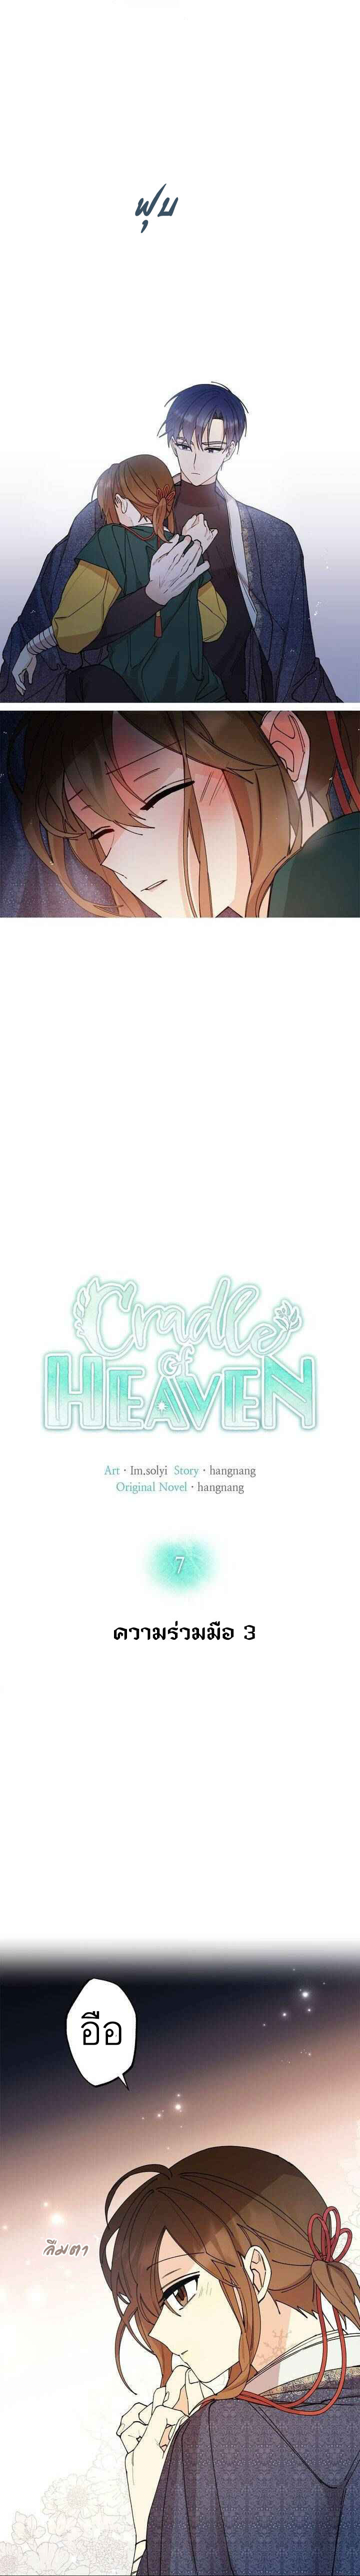 Cradle of Heaven 7 02